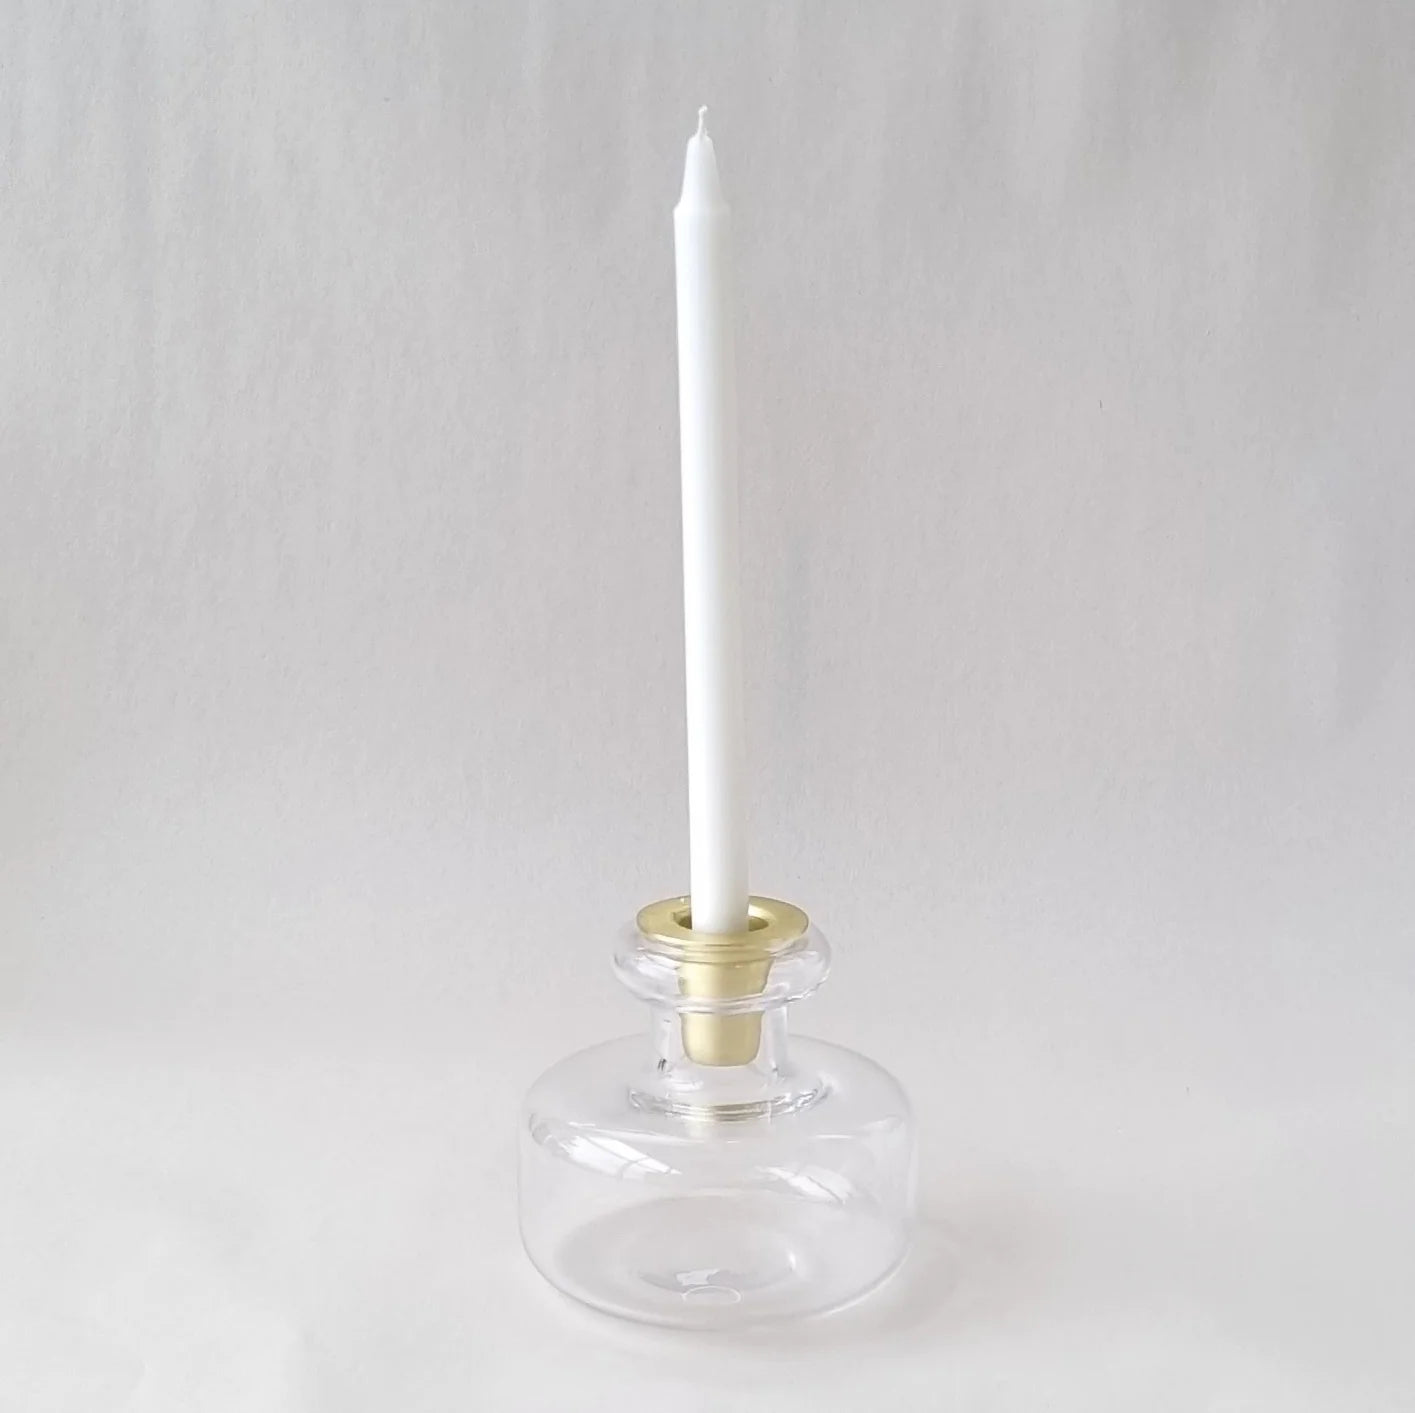 Narrow stick silicon candle mold